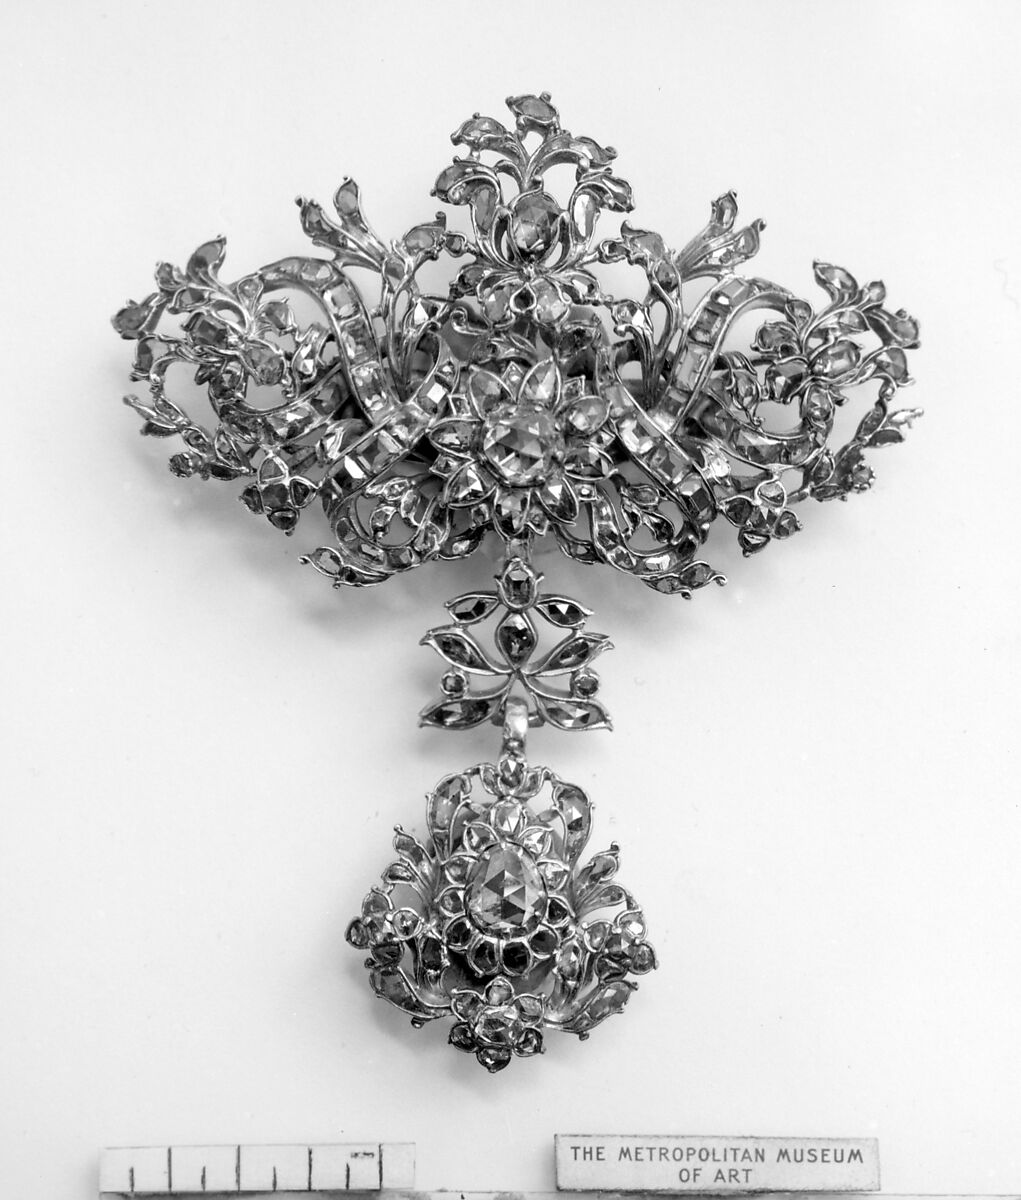 Brooch, Silver, diamonds, Portuguese or Spanish 